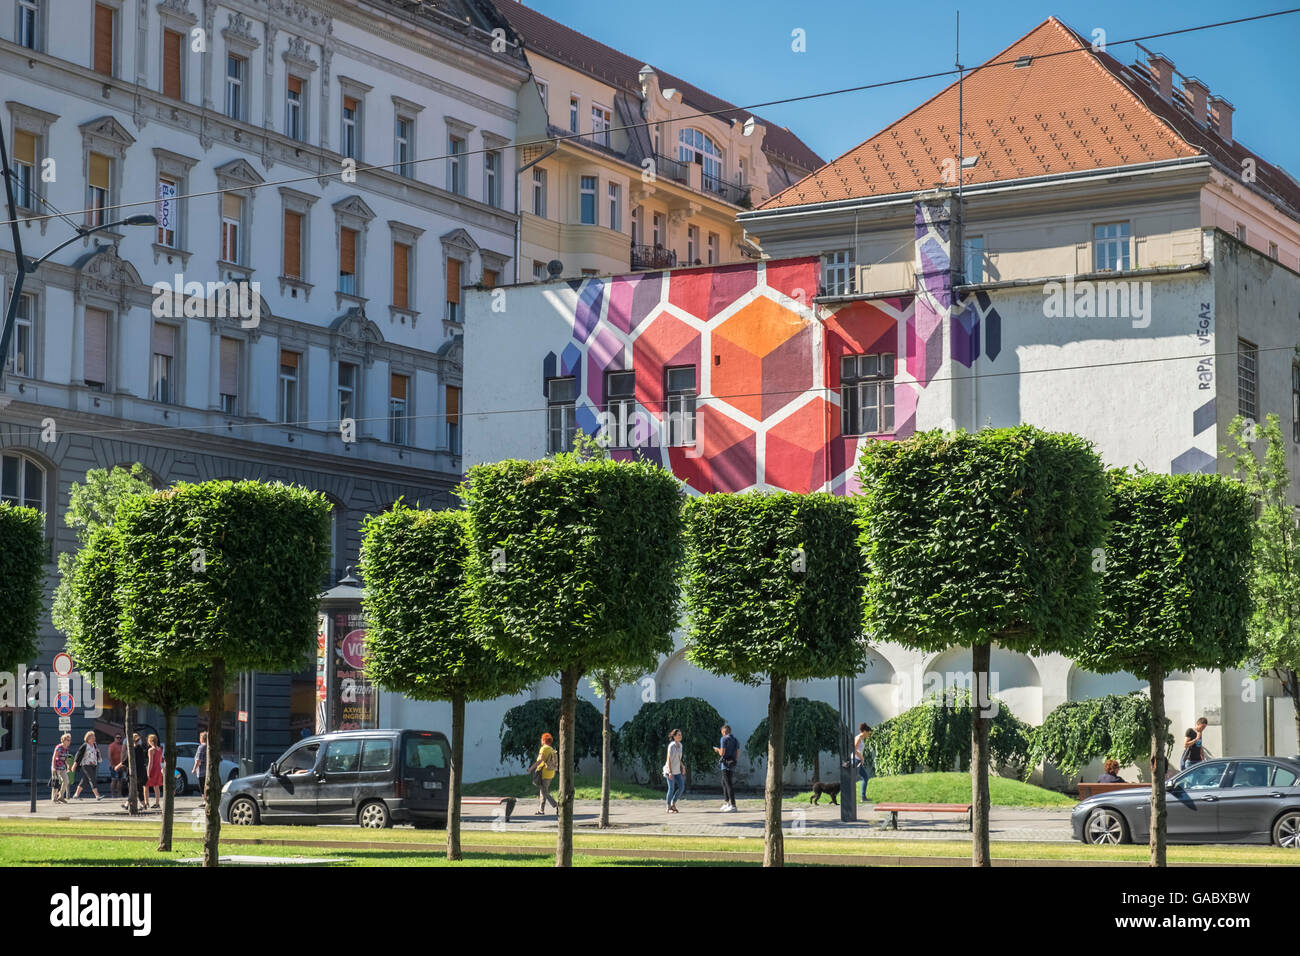 Arte en la calle, que comprende la construcción mural y recorta los árboles, en Karoly Krt, Budapest, Hungría Foto de stock